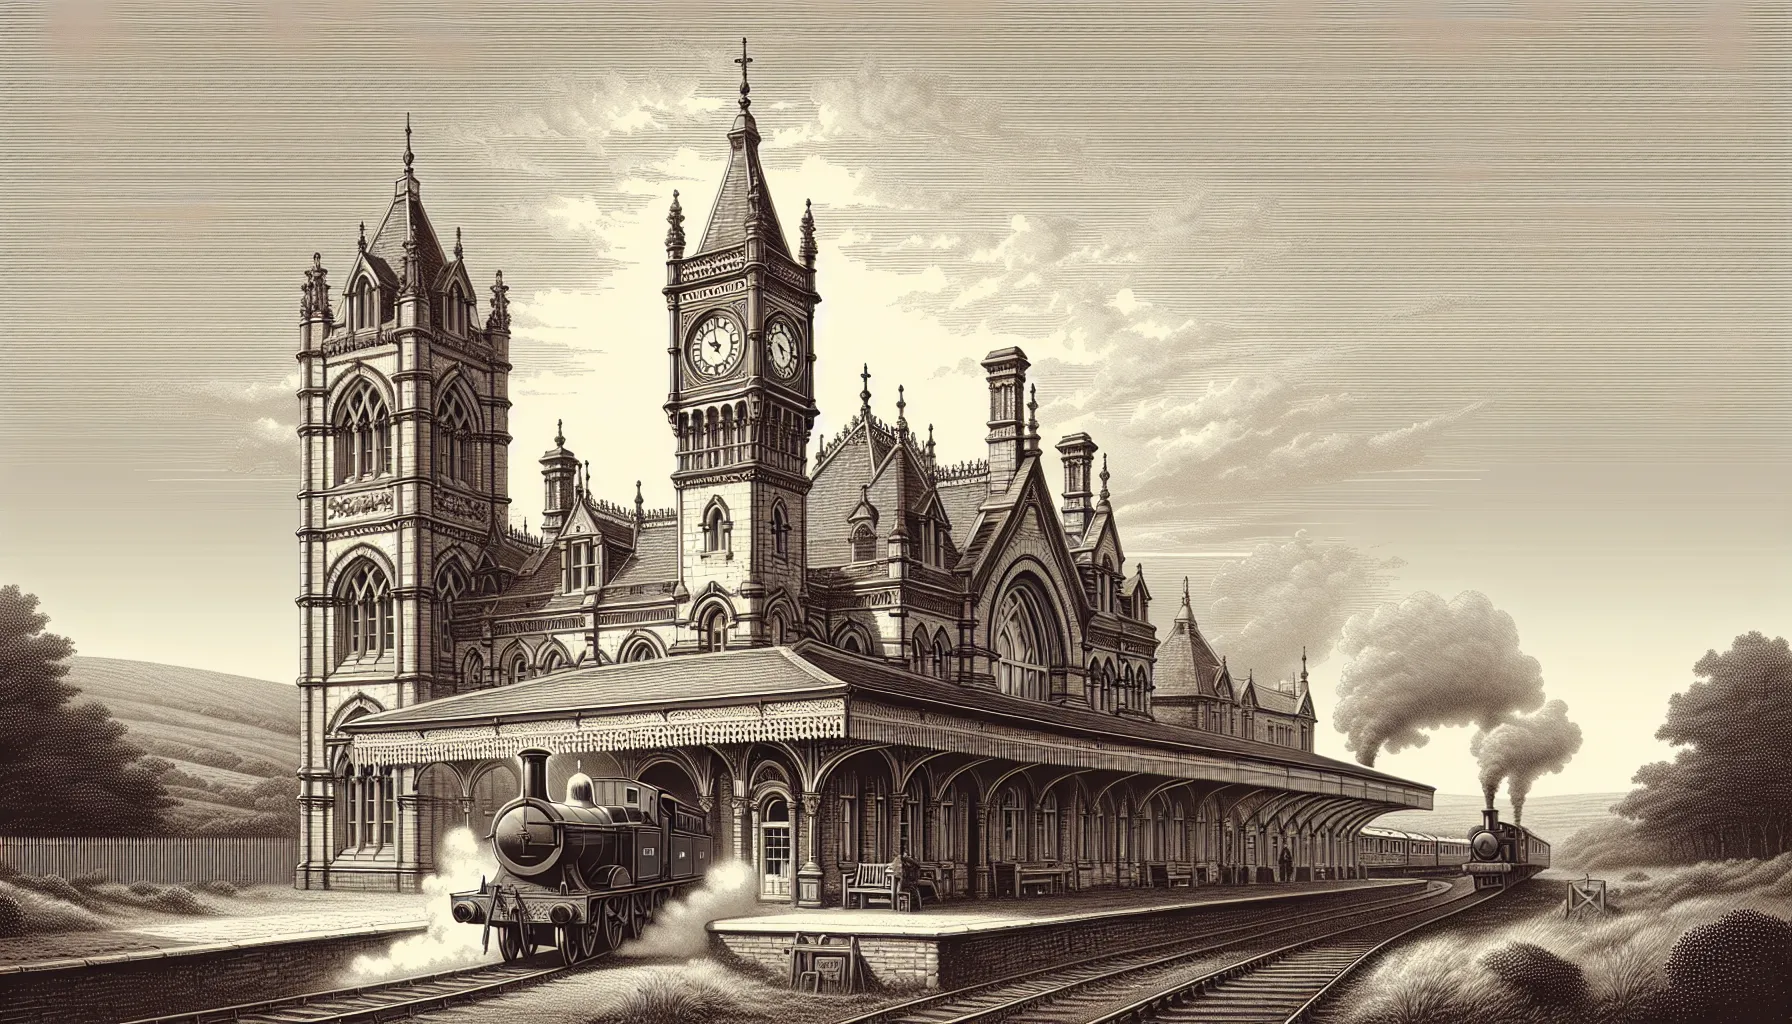 York possui um rico patrimônio de ferrovias. A cidade foi um importante centro ferroviário durante o século XIX e início do século XX, desempenhando um papel crucial no desenvolvimento da rede ferroviária britânica.

A estação de trem de York, construída em 1877, é um dos principais marcos da cidade. Esta estação histórica é conhecida por sua arquitetura impressionante